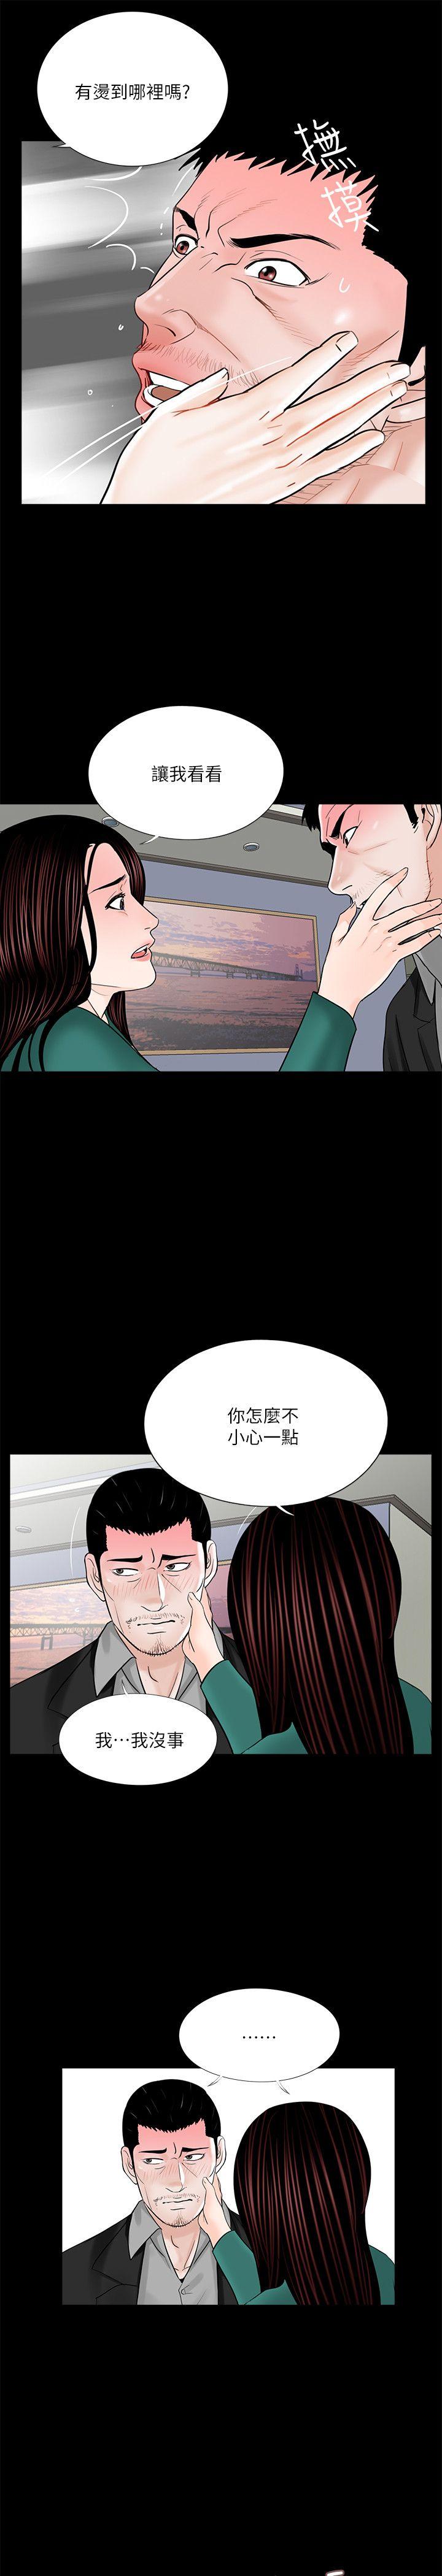 韩国污漫画 夢魘 第33话 16